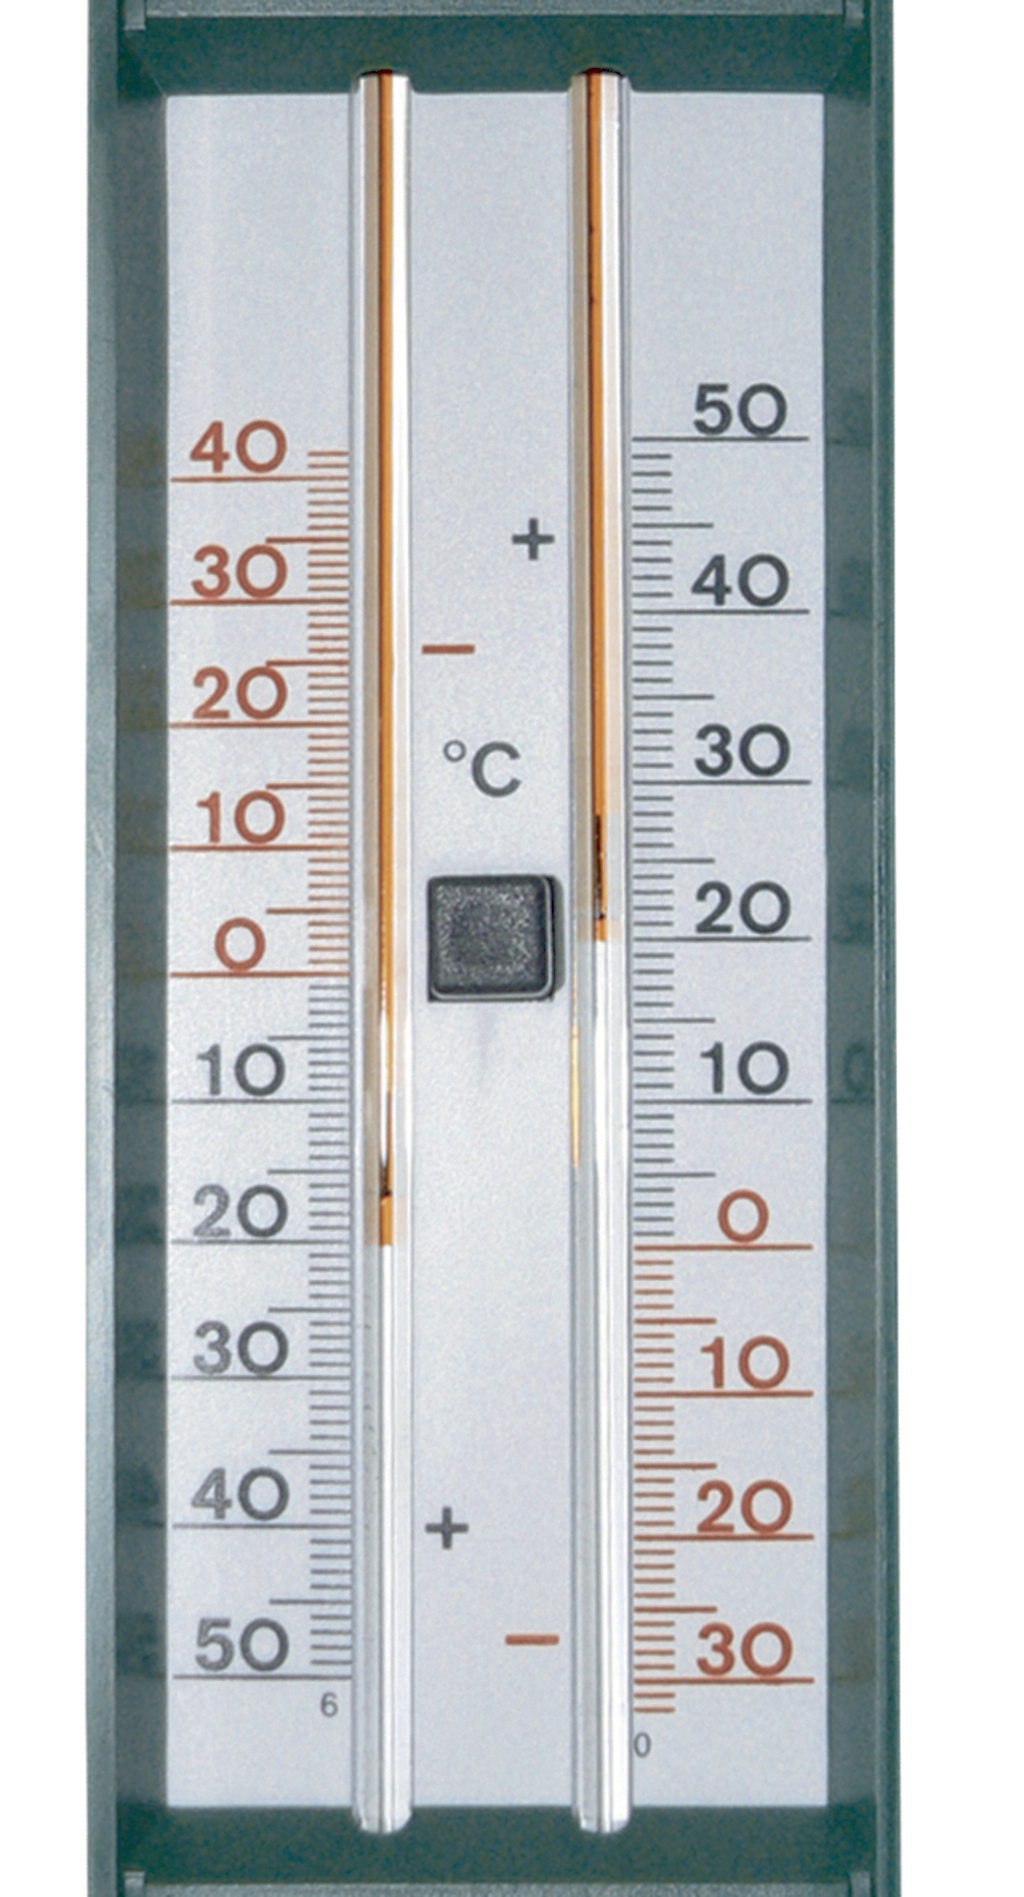 Thermometre mini maxi vert. Sans mercure